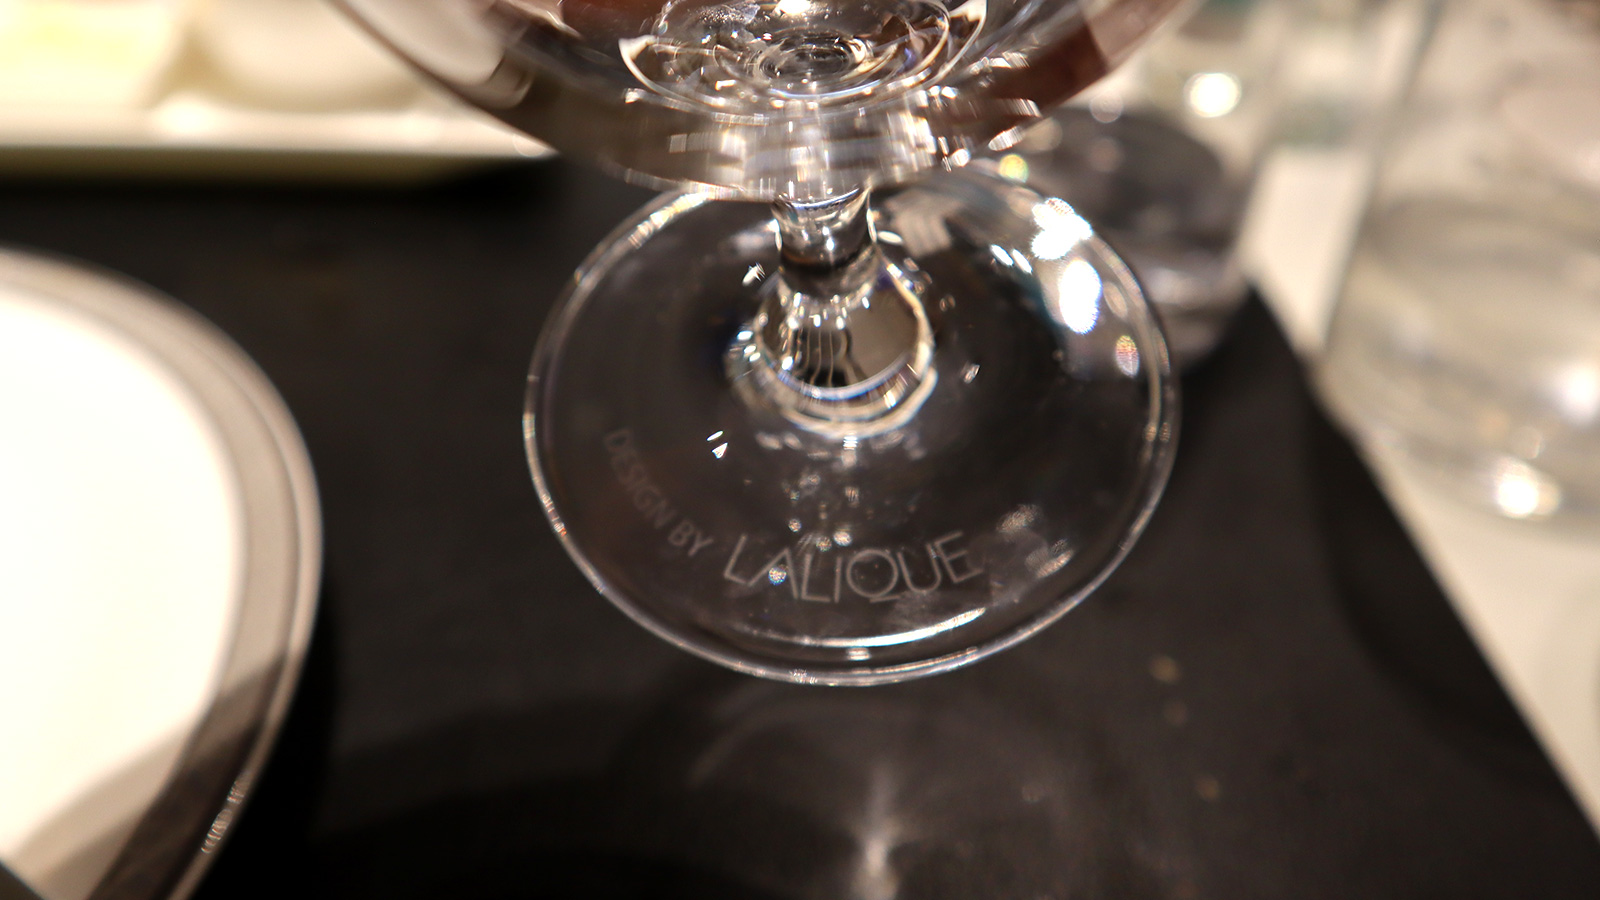 Lalique glassware in sq silverkris lounge